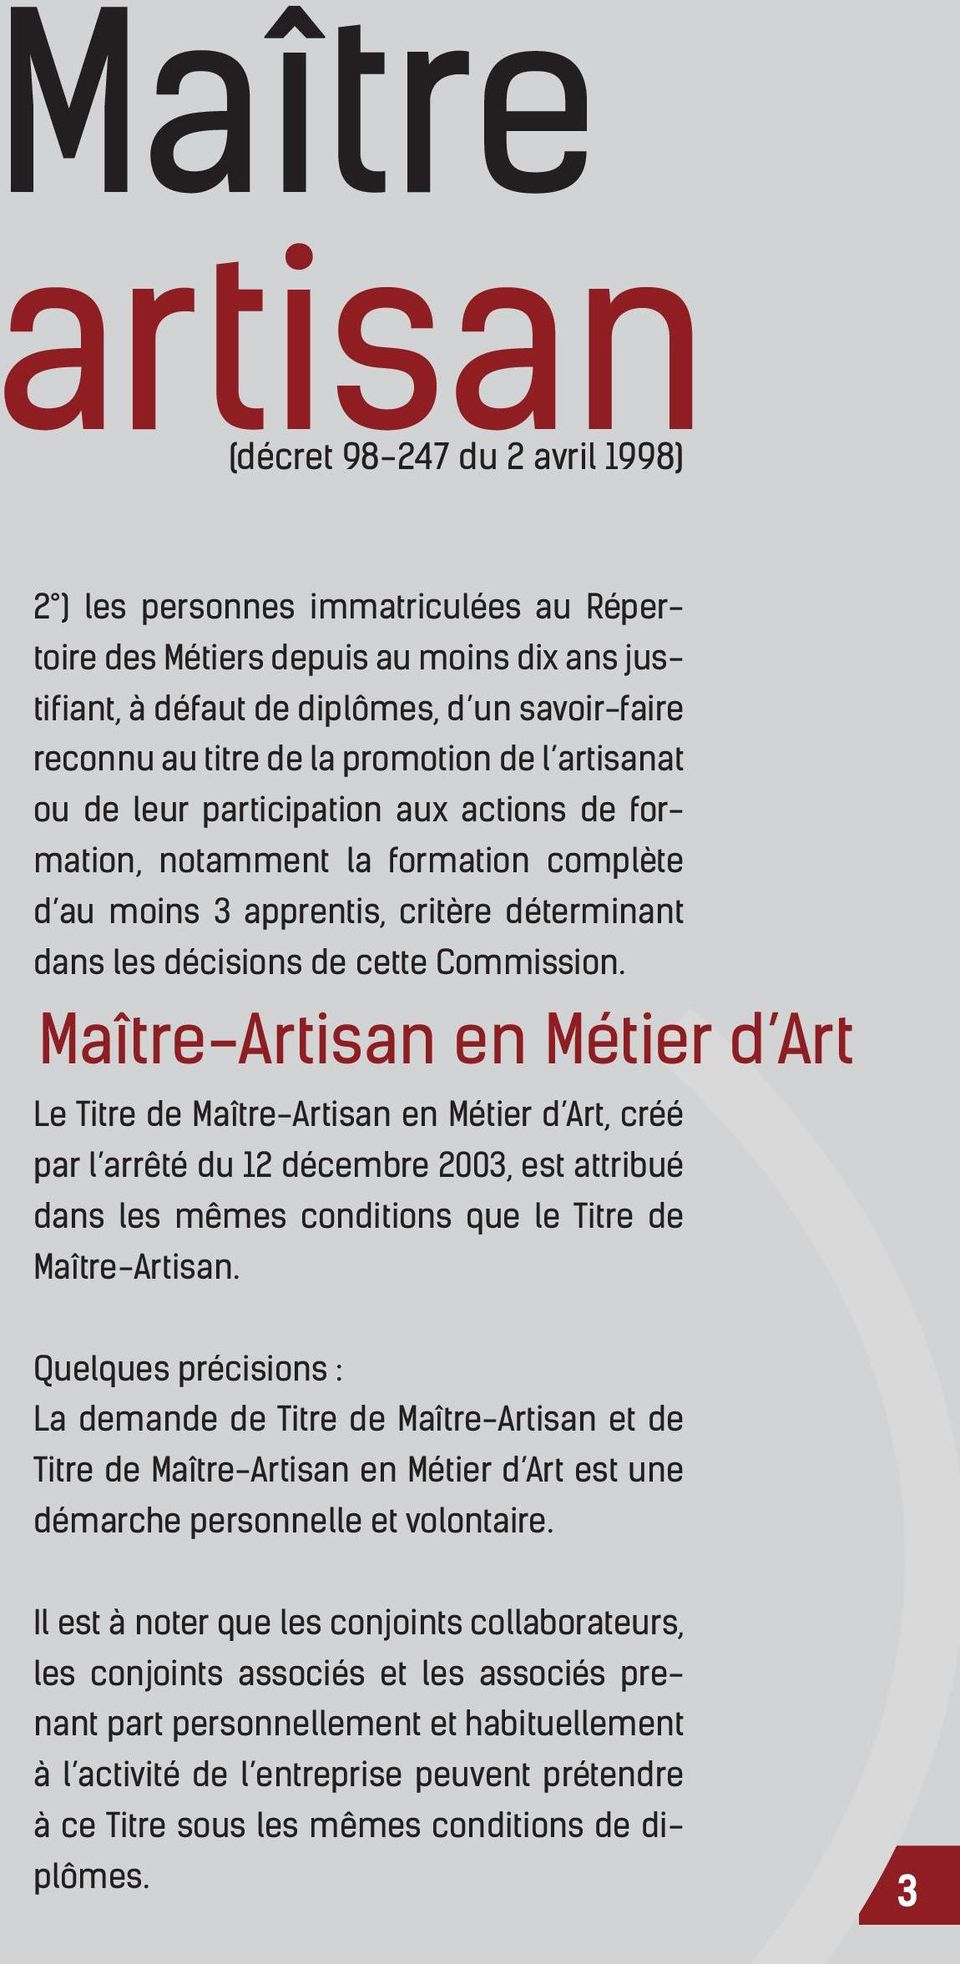 Maître-Artisan en Métier d Art Le Titre de Maître-Artisan en Métier d Art, créé par l arrêté du 12 décembre 2003, est attribué dans les mêmes conditions que le Titre de Maître-Artisan.